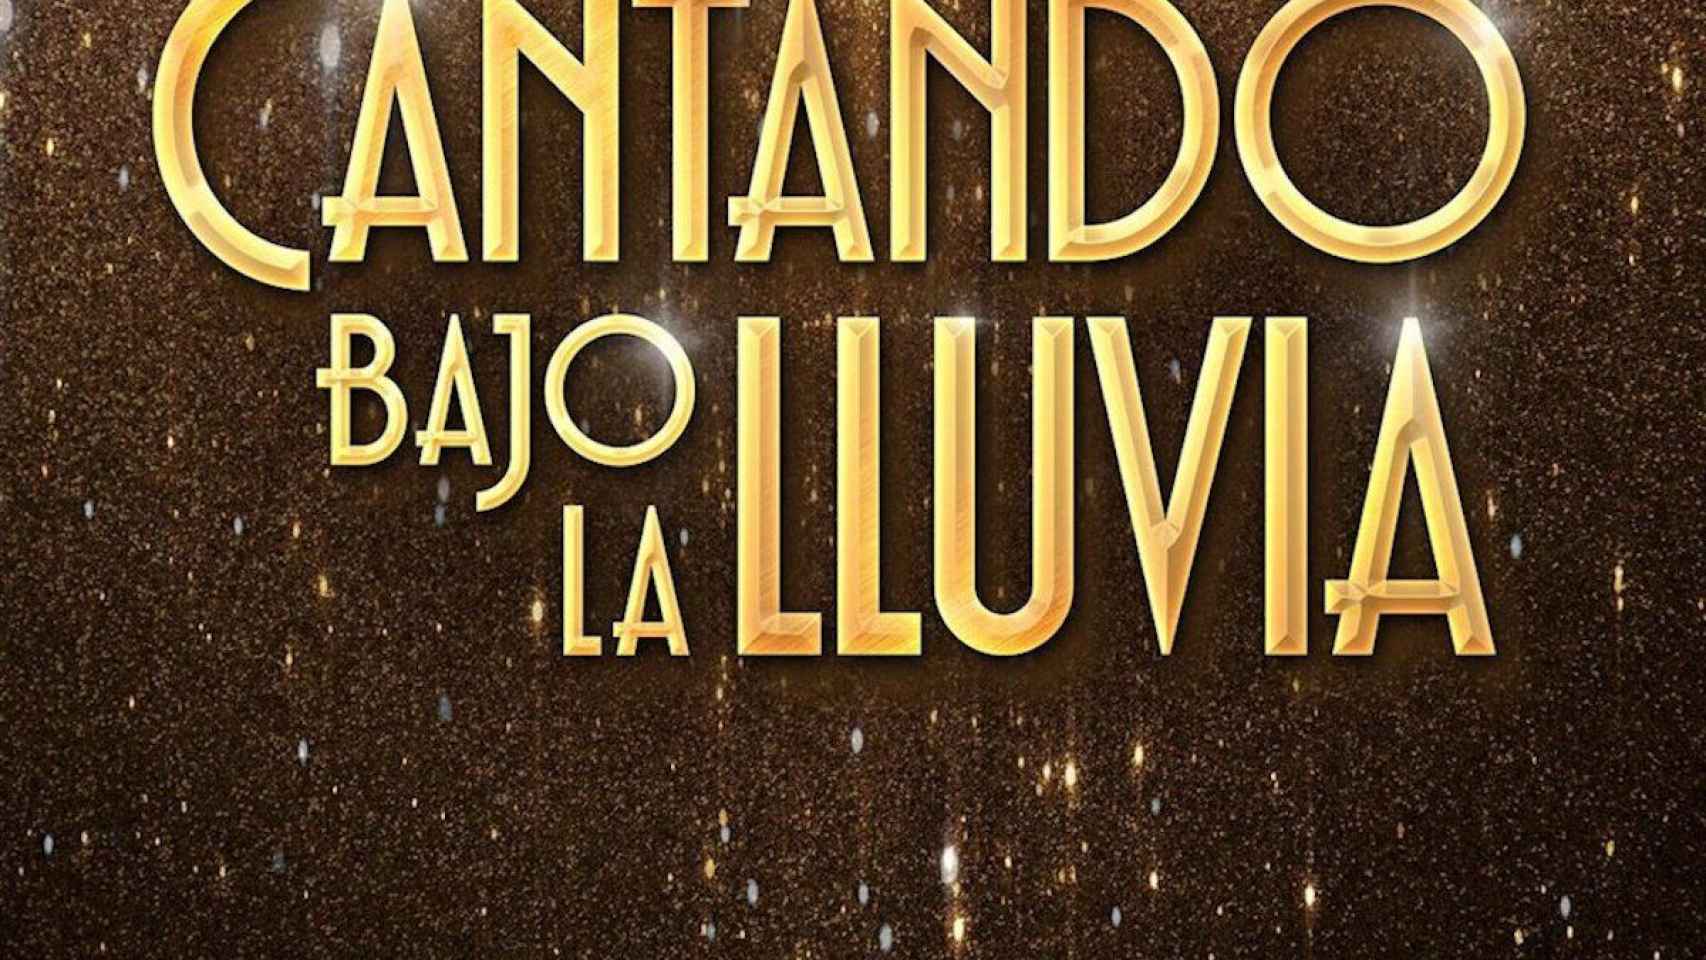 Àngel Llàcer y Manu Guix crearán el musical 'Cantando Bajo la Lluvia' con estreno en 2021 / COMÈDIA